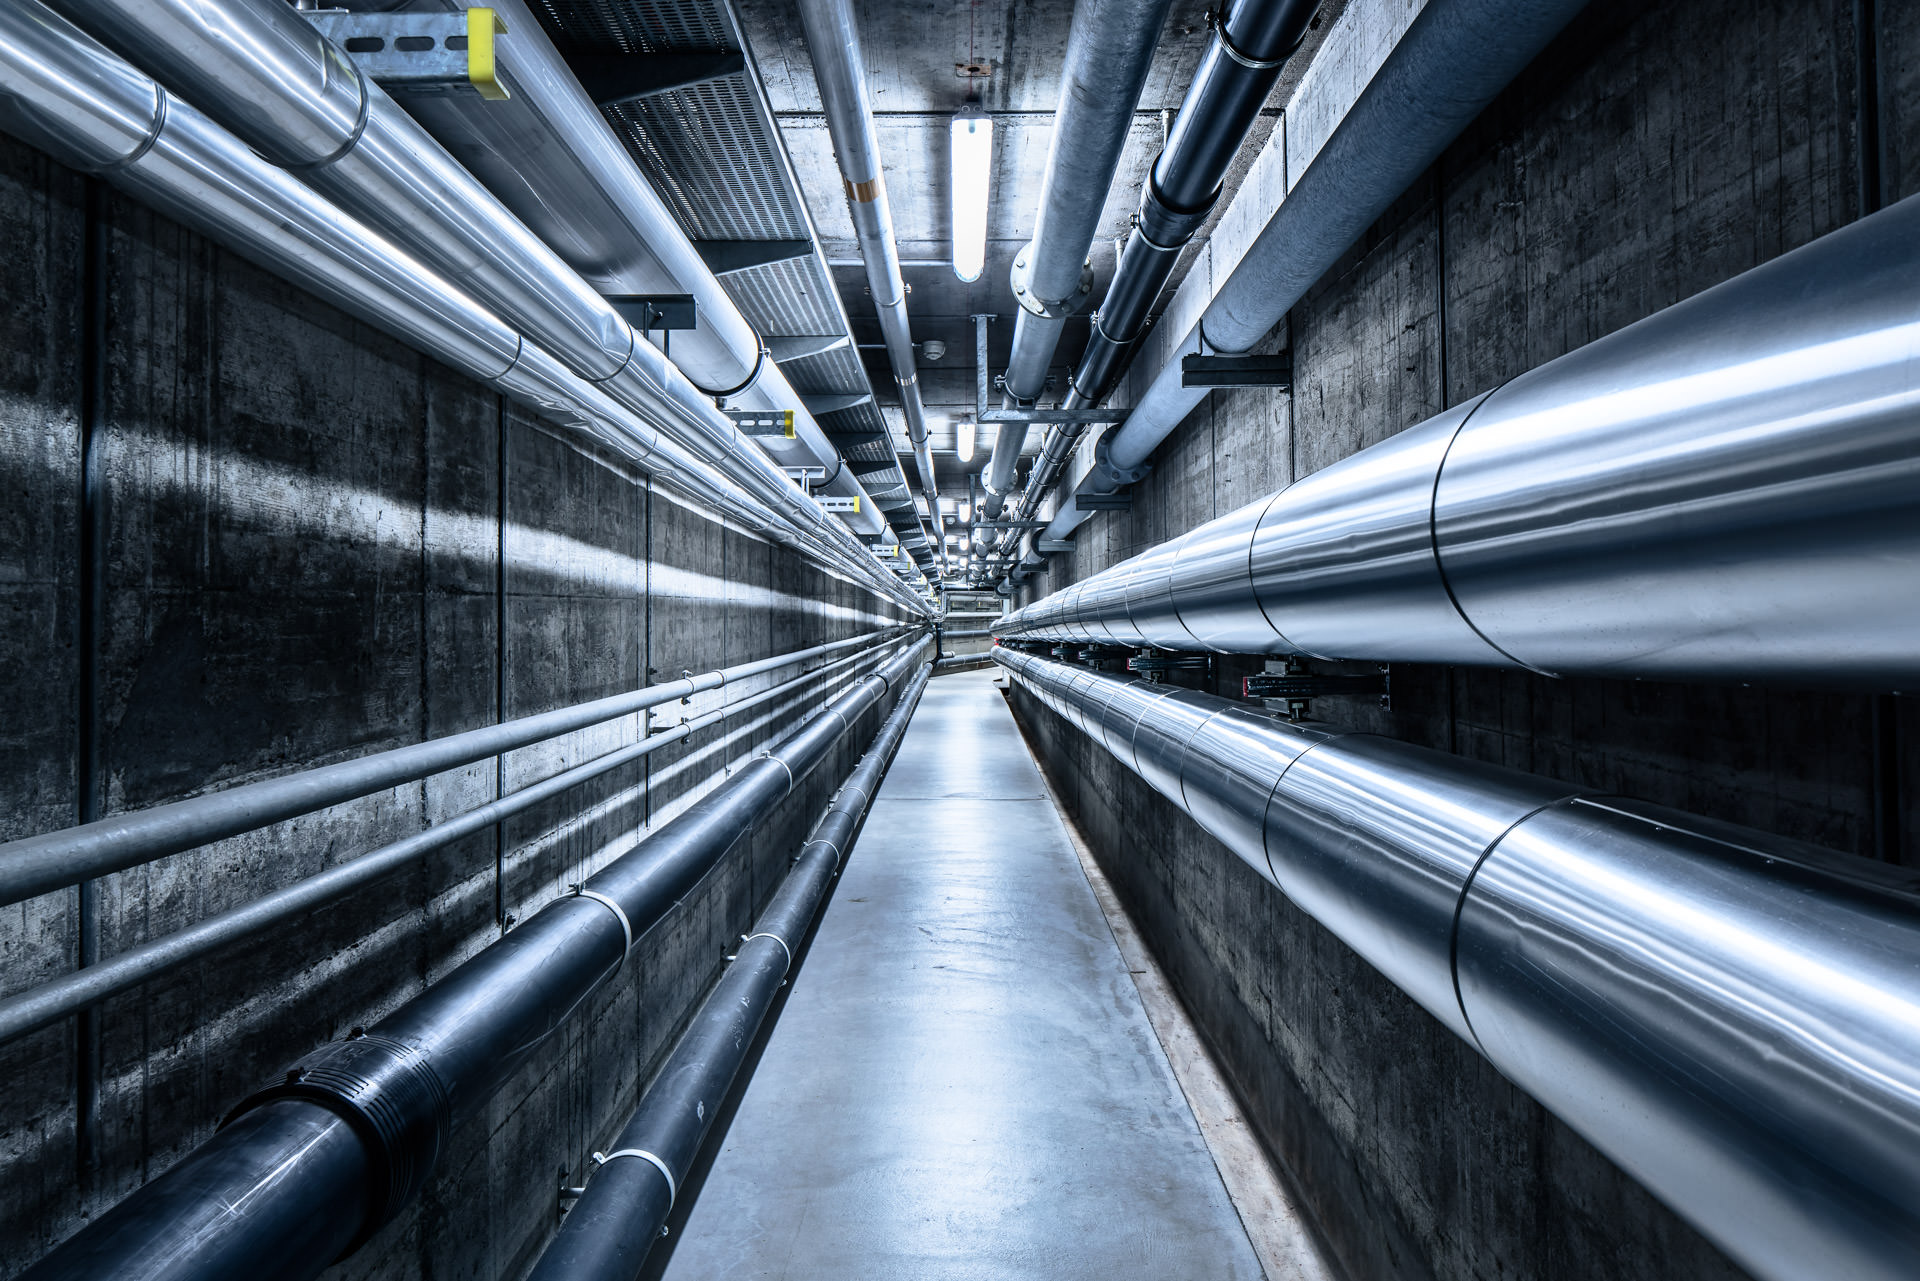 Key visual und Bildwelten: Röhren und Zentralperspektiven in unterirdischer Industrieanlage. Industriefotografie Philippe Wiget